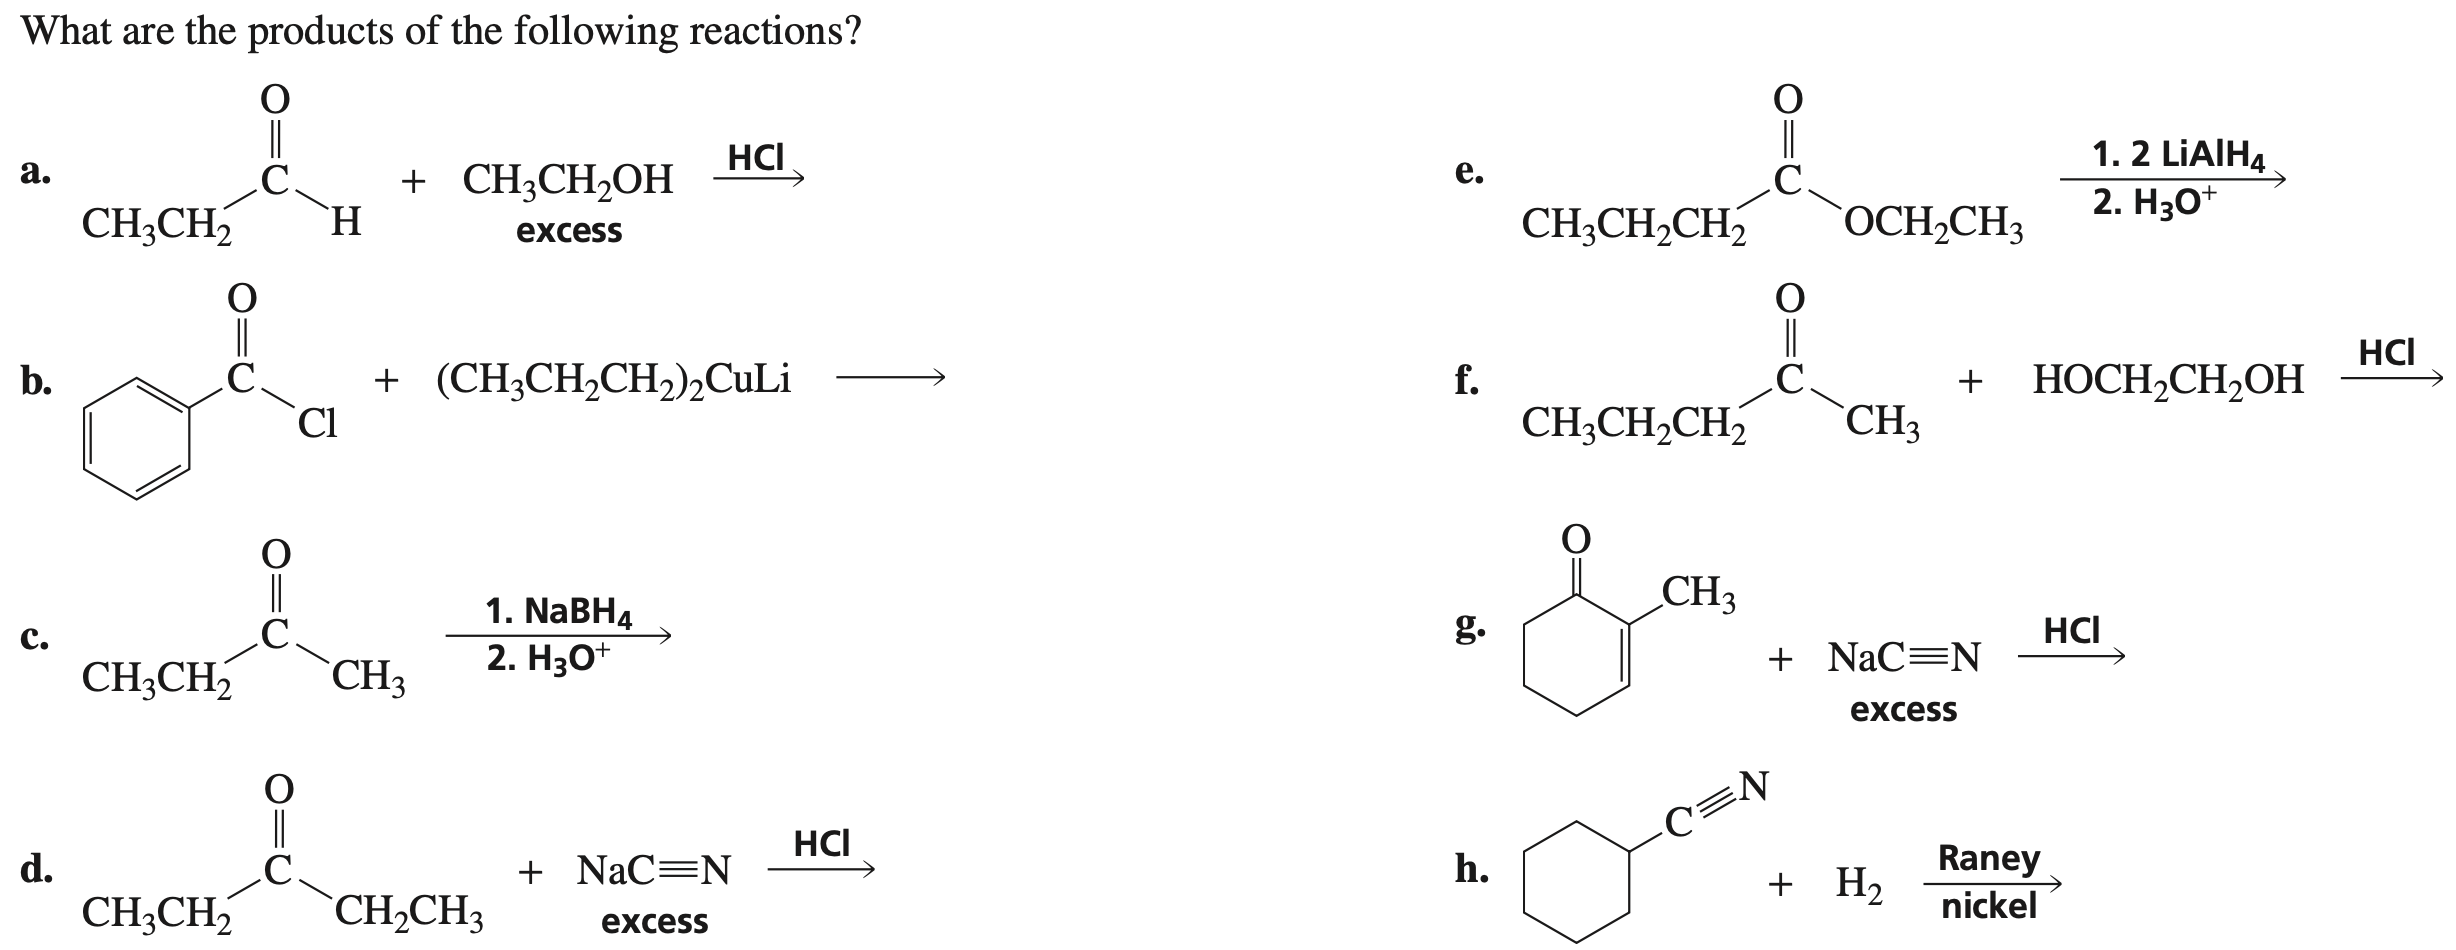 Цепочка реакций ch3 ch3